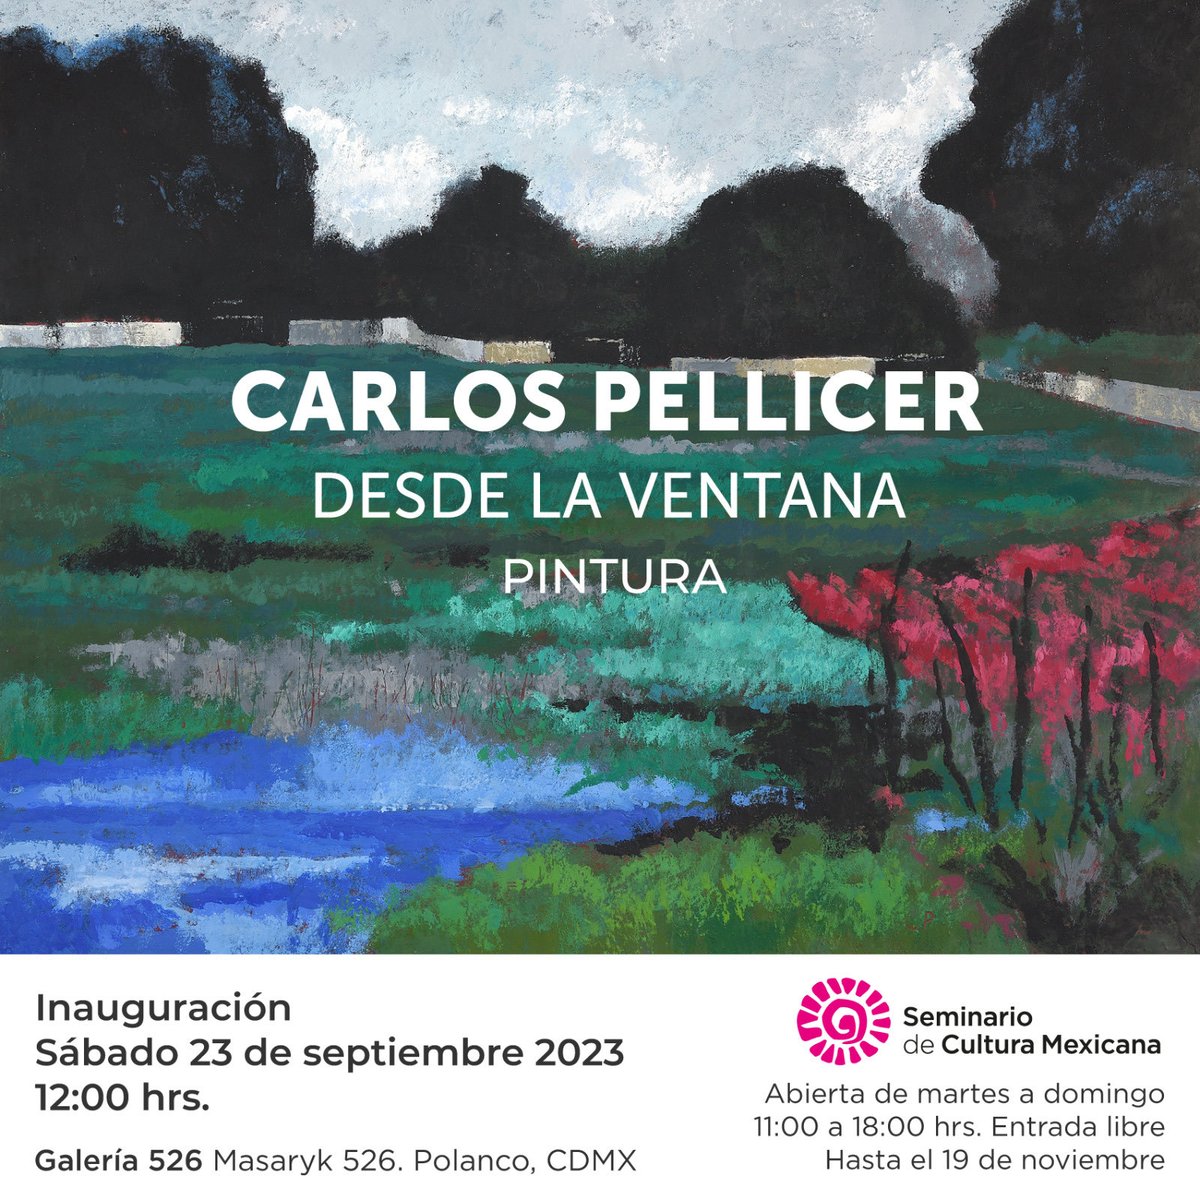 Mañana sábado 23 a las 12 hrs, inauguraremos la exposición de Carlos Pellicer, los esperamos!